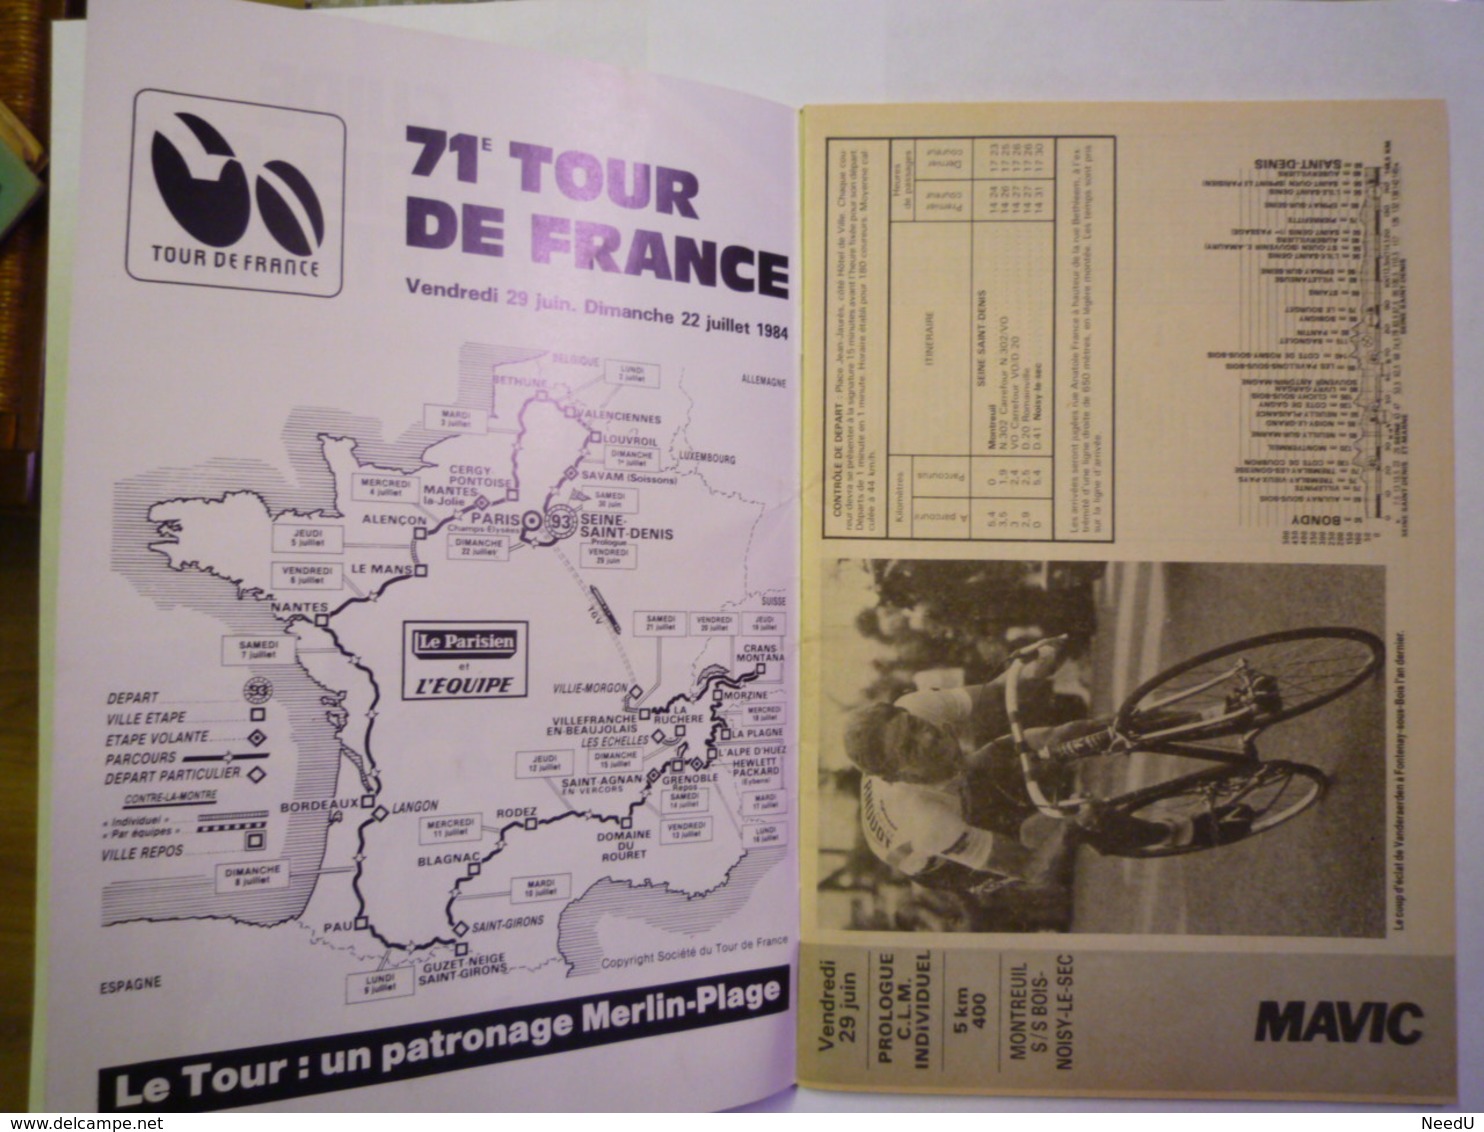 GP 2019 - 1667  TOUR De FRANCE 1984  :  Guide Officiel Des 23 étapes   XXX - Radsport